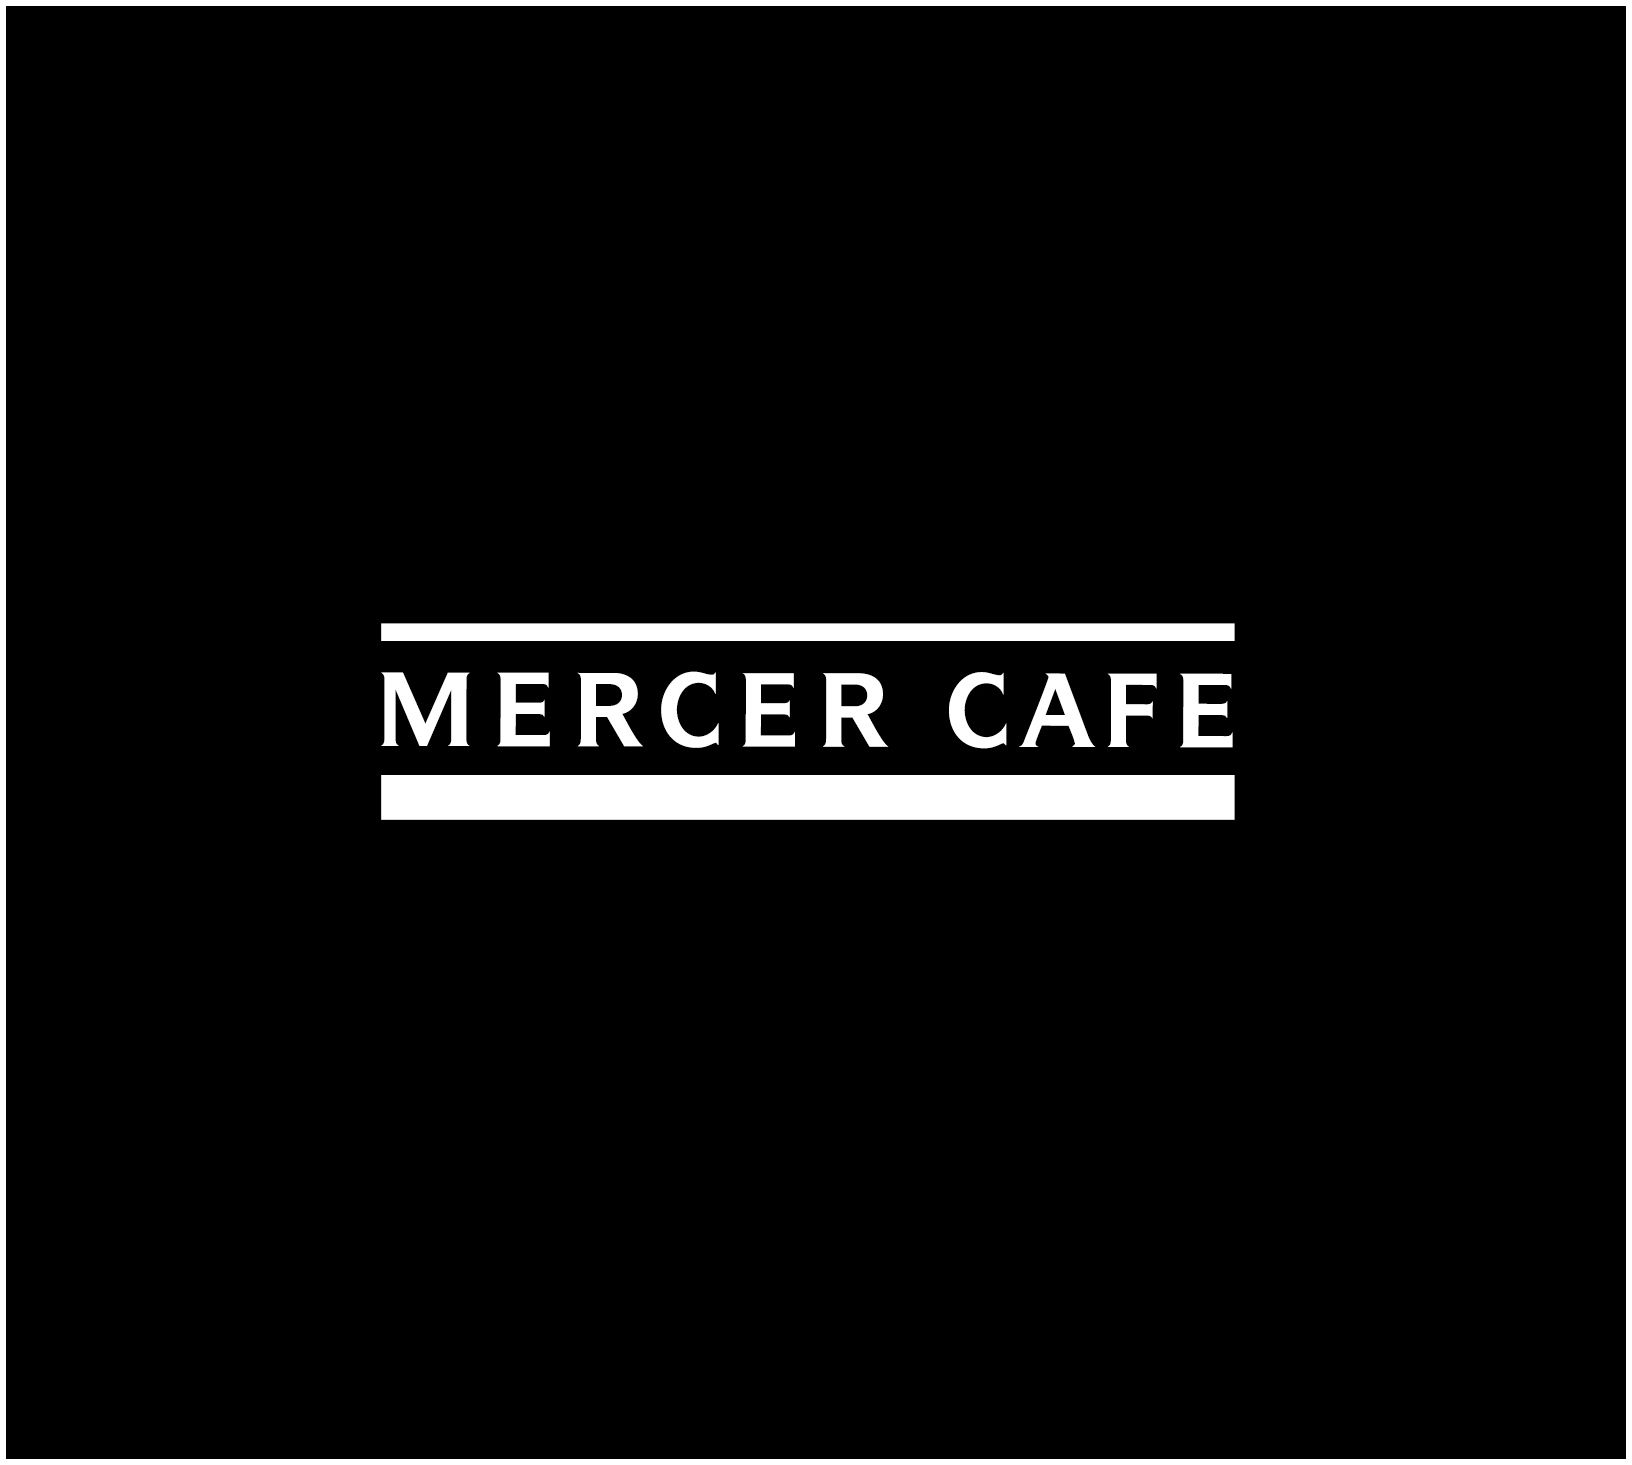 Mercer Cafe Dj 19